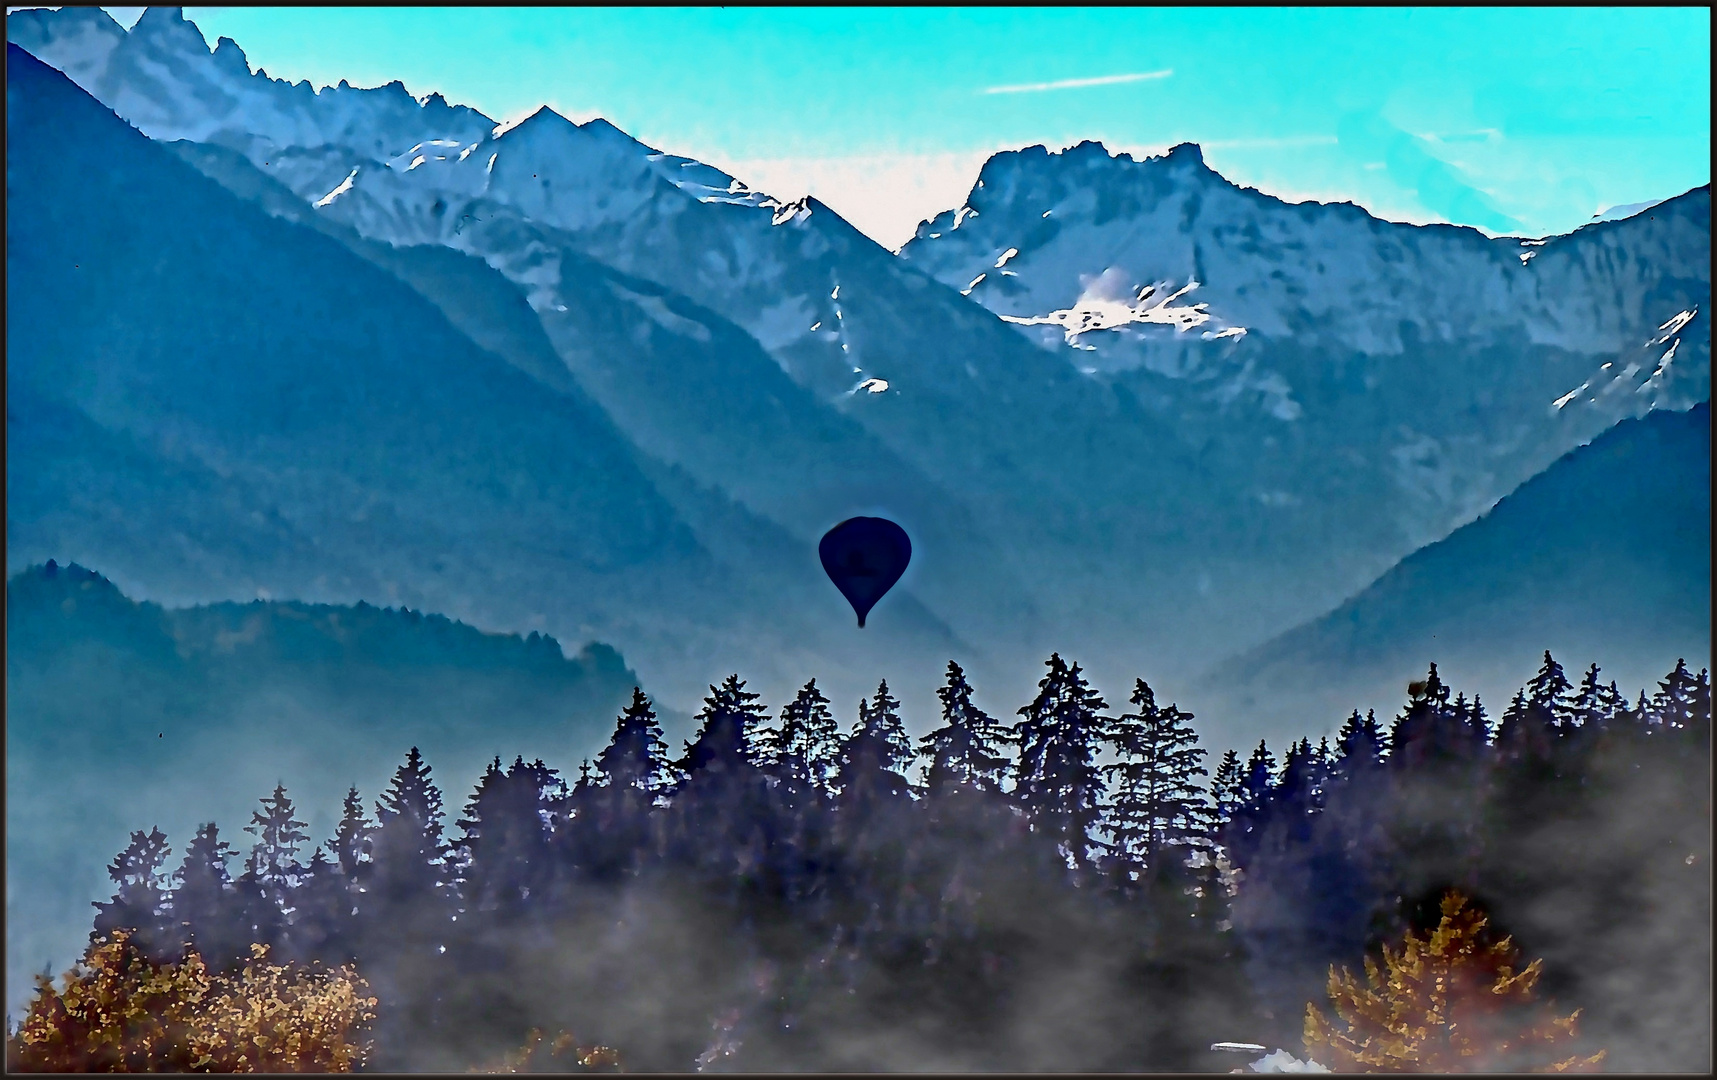 Alpine Ballonfahrt im Heißluftballon